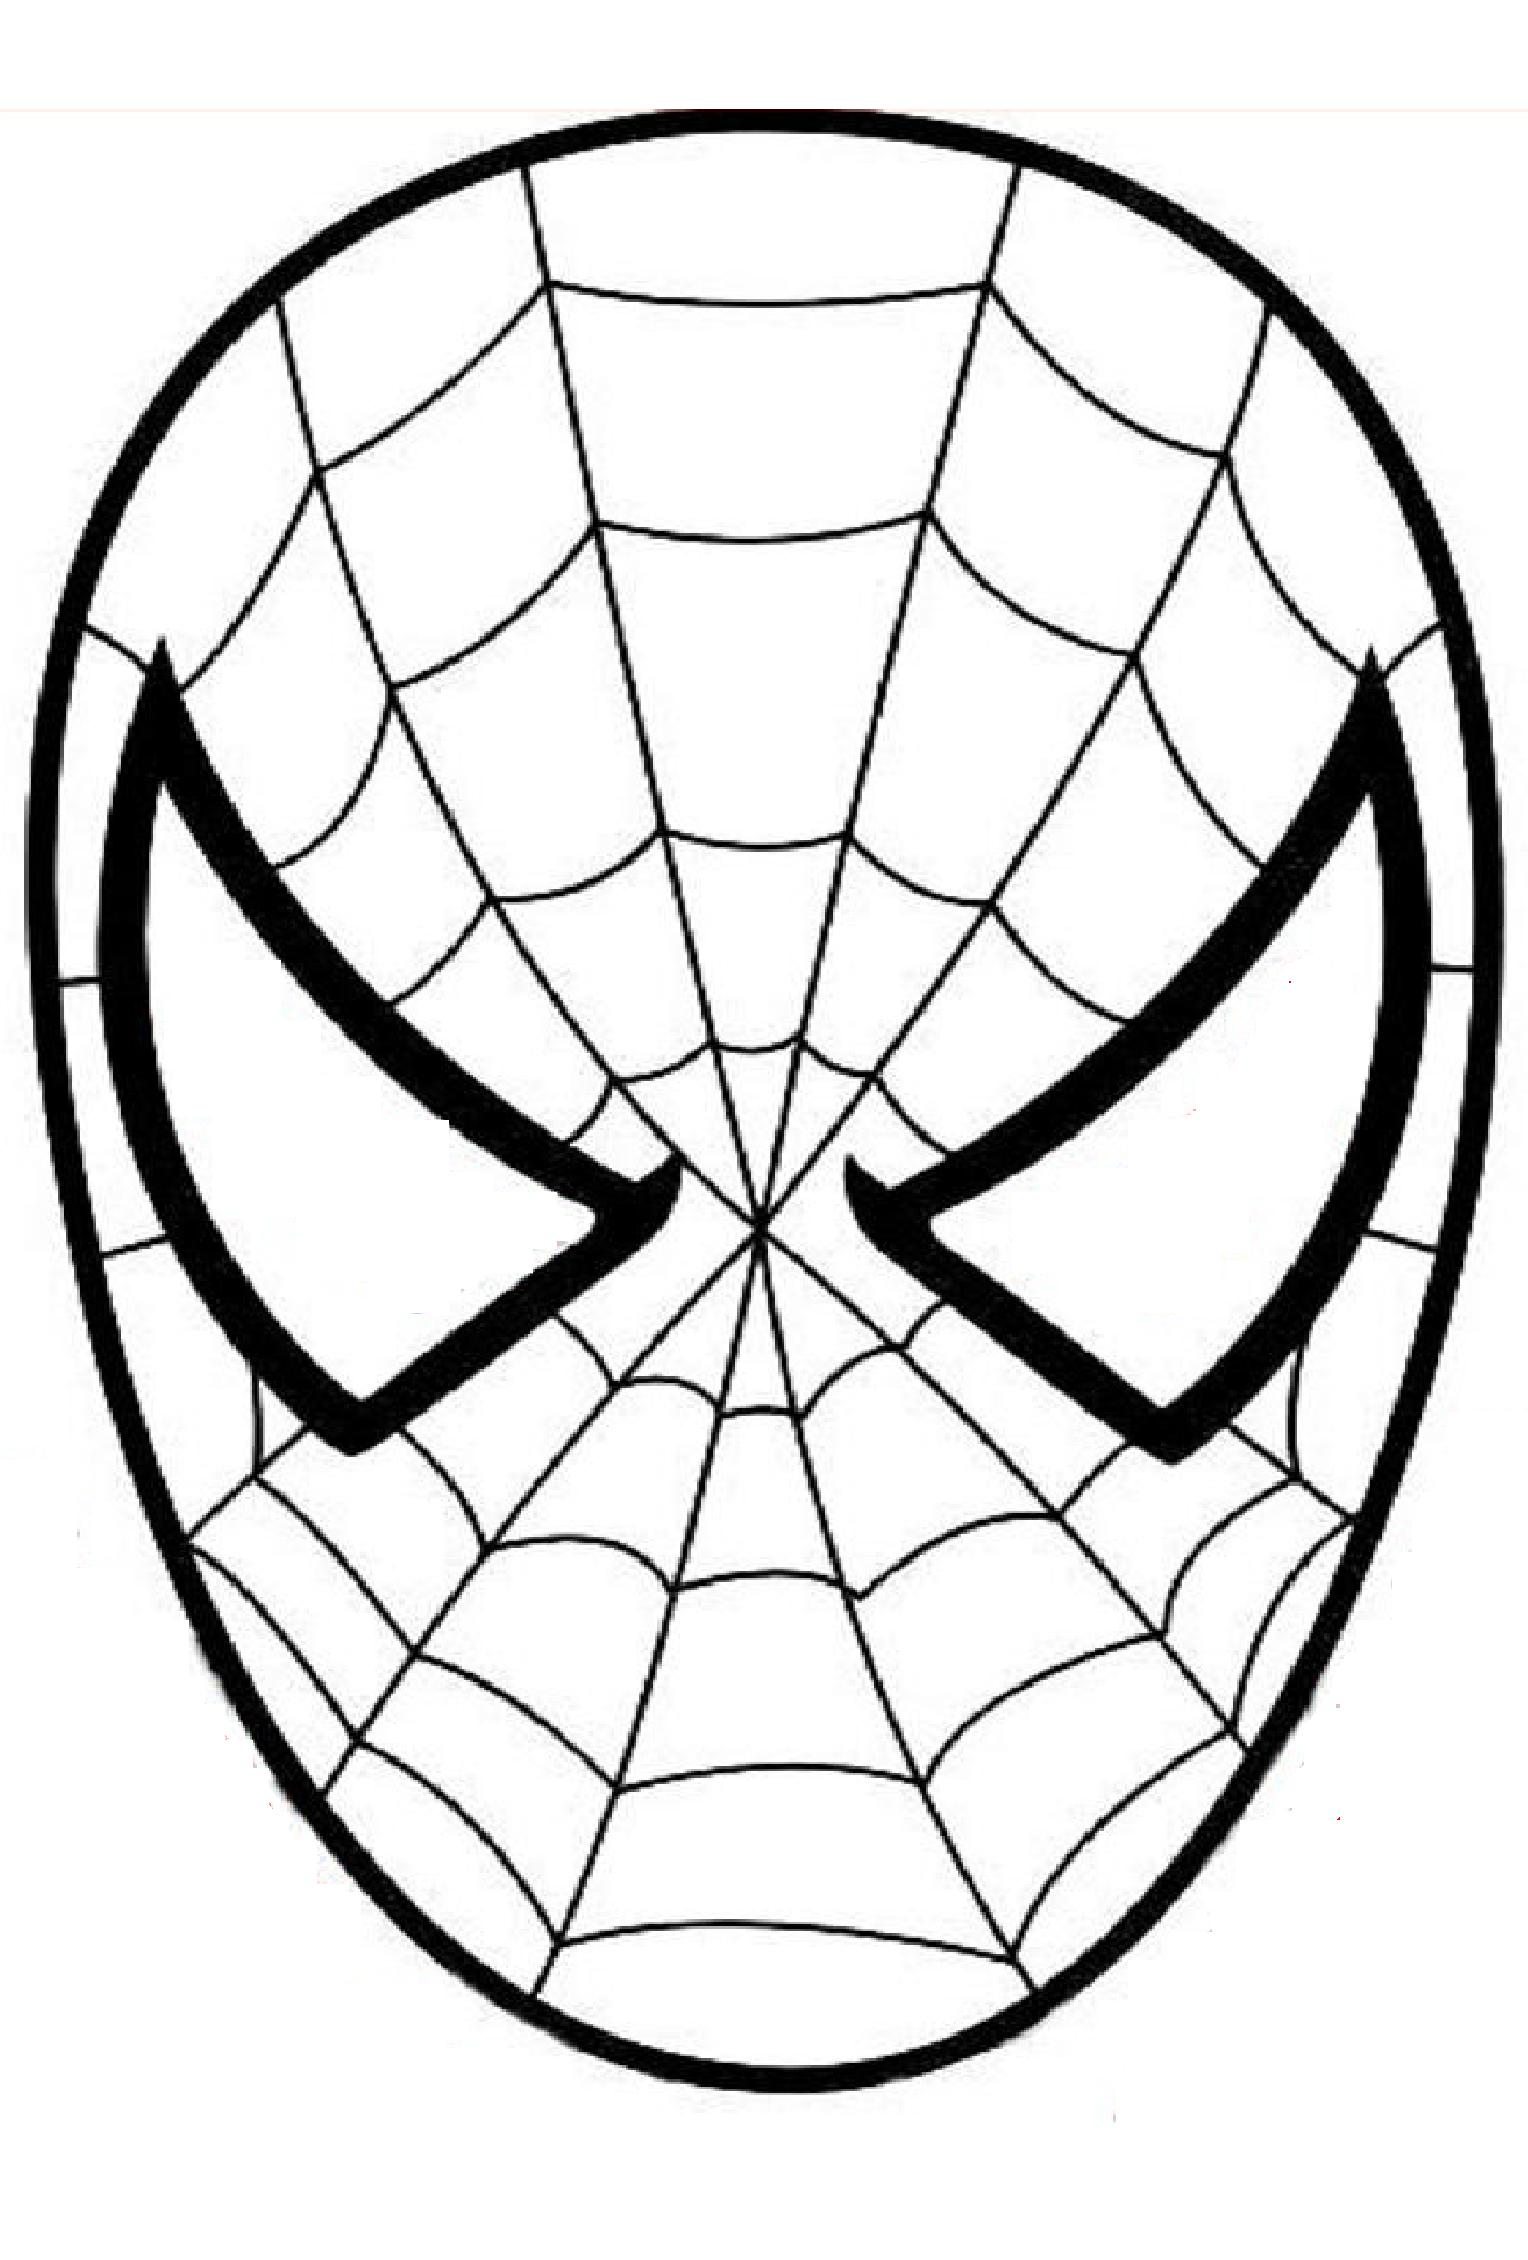 Desenhos para colorir com Homem Aranha - Desenhos para colorir